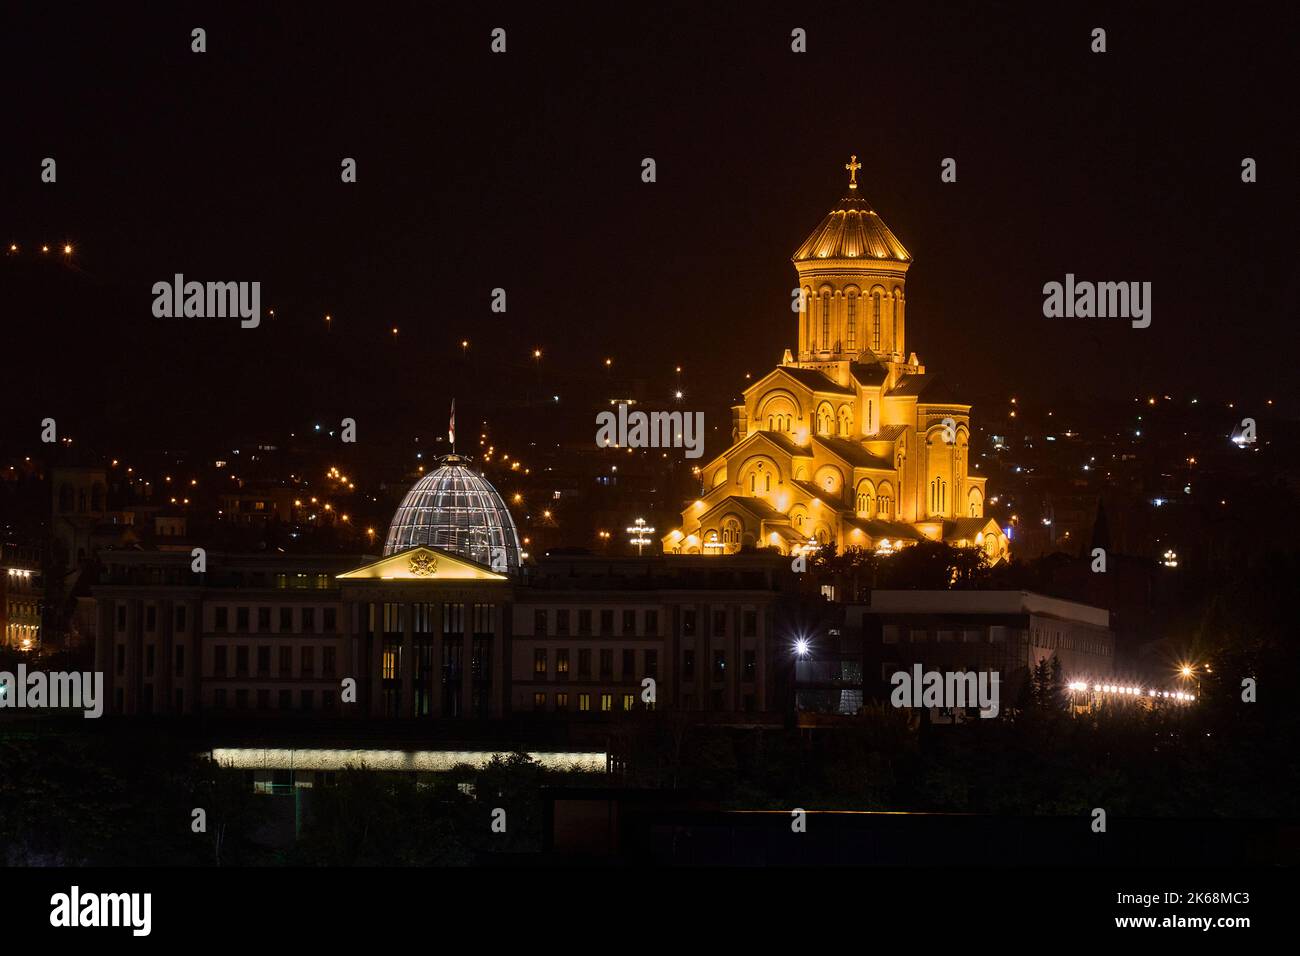 Tiflis bei Nacht, vorne der Präsidentenpalast, rechts die hell erleuchtete Sameba-Kathedrale, Tiflis, Georgien Stock Photo